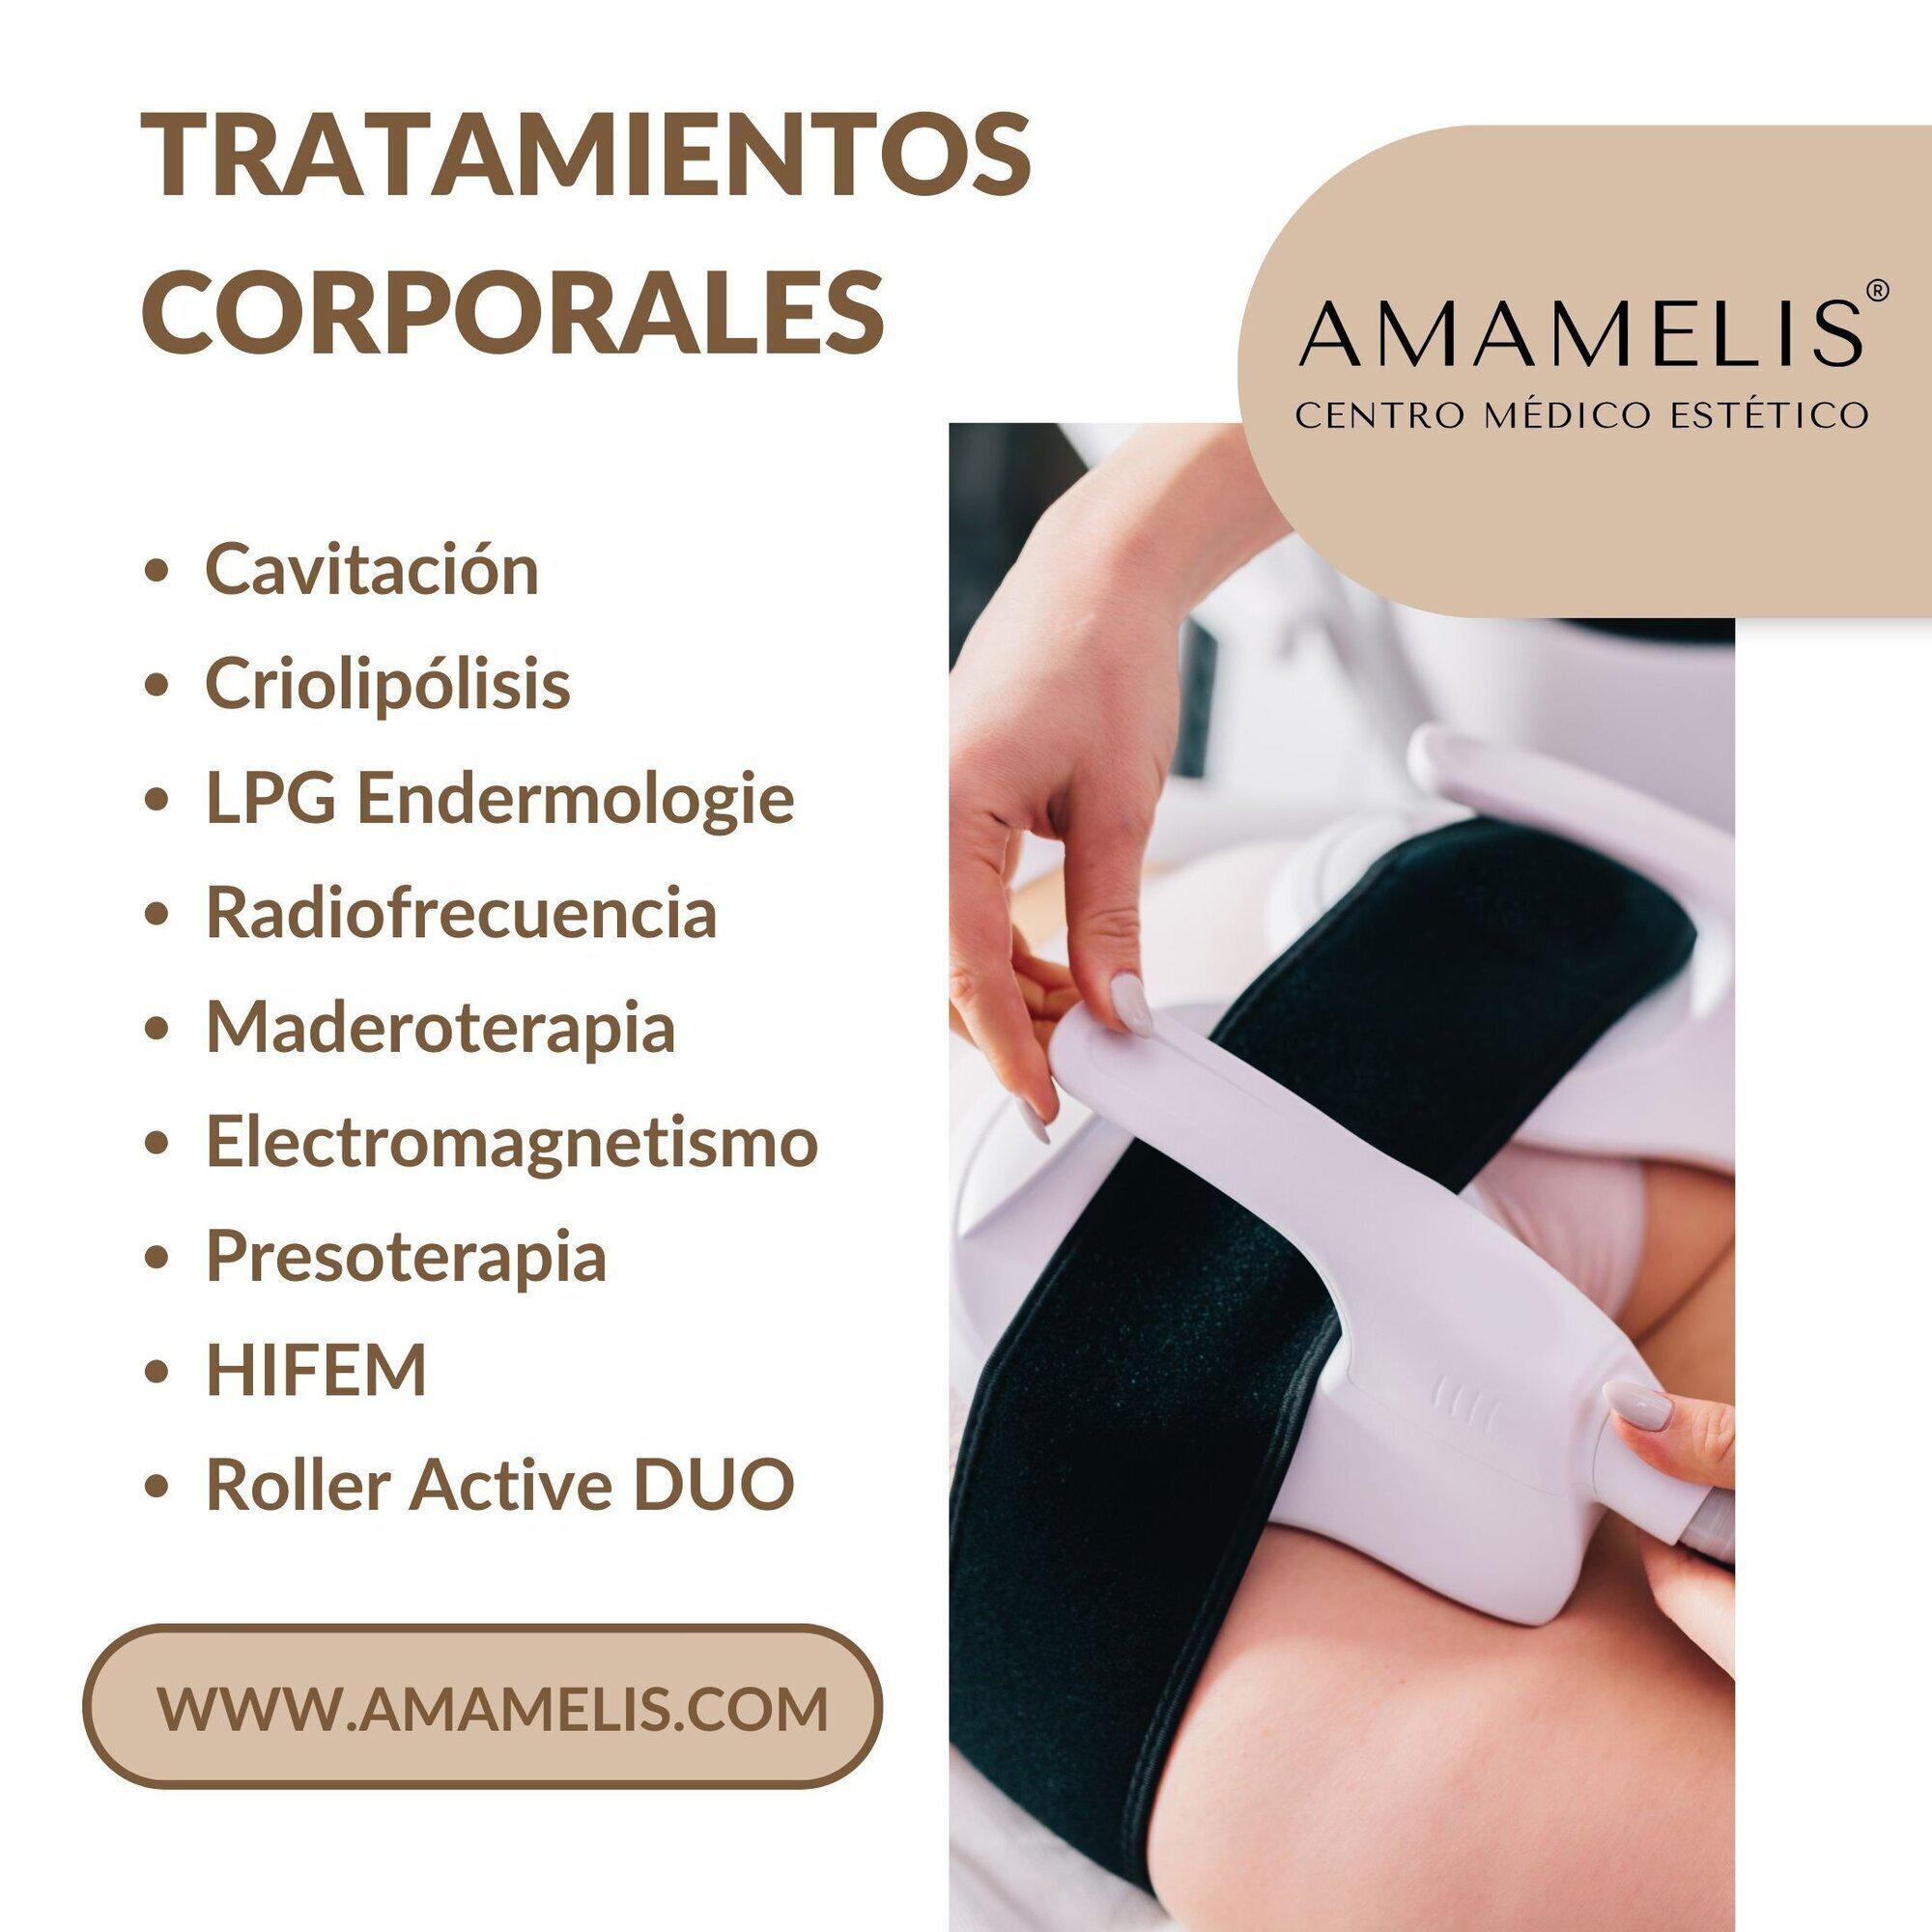 Images Amamelis Centro Médico Estético